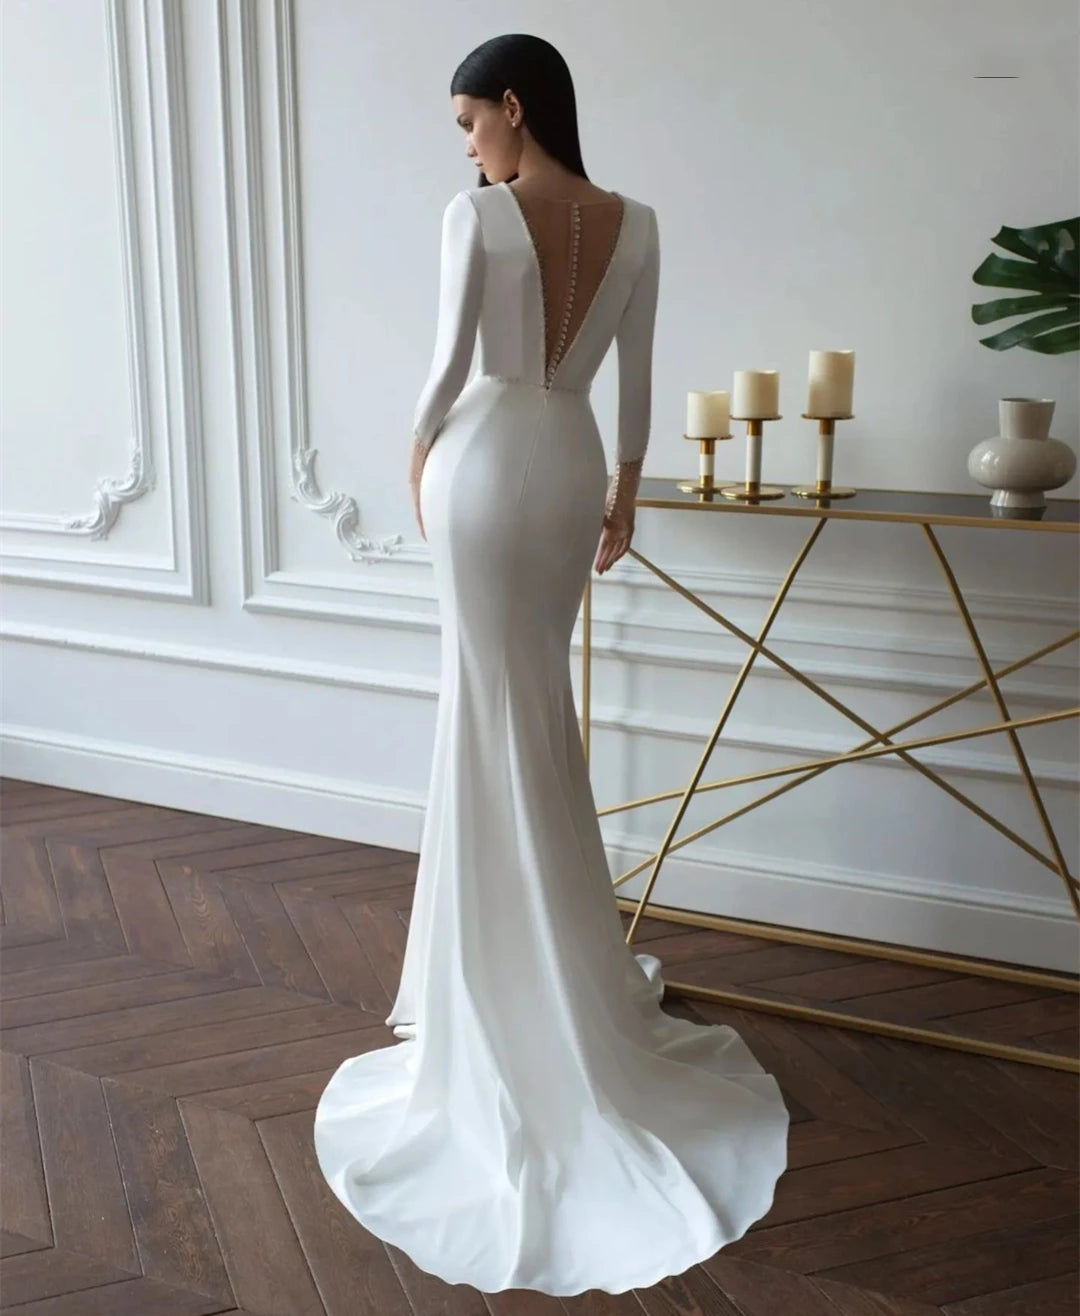 Gaun pengantin satin v-neck baru yang sederhana 3/4 lengan putri duyung gaun pengantin gaun sapuan kereta untuk wanita gaun wanita putih